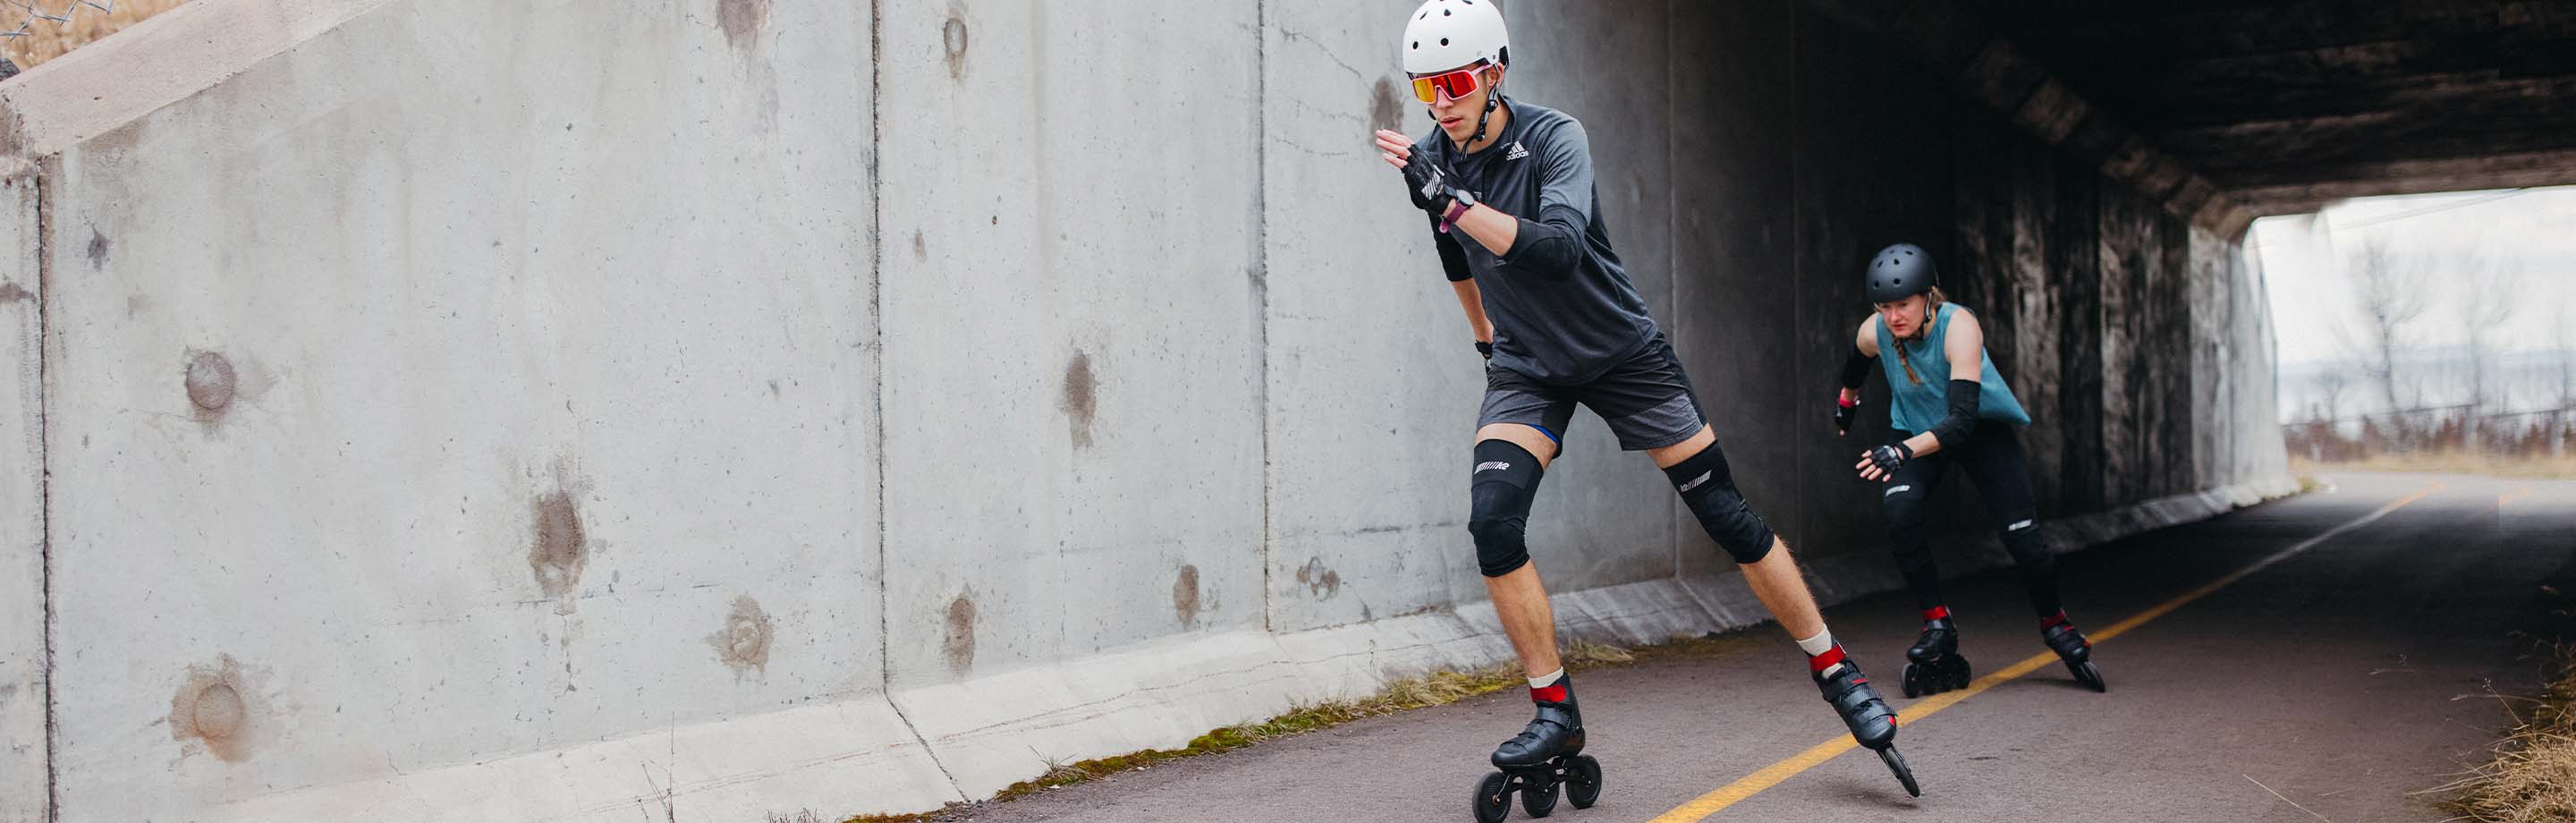 K2 Skates – Inline Skates von der Kultmarke für Fitness und ambitioniertes Training